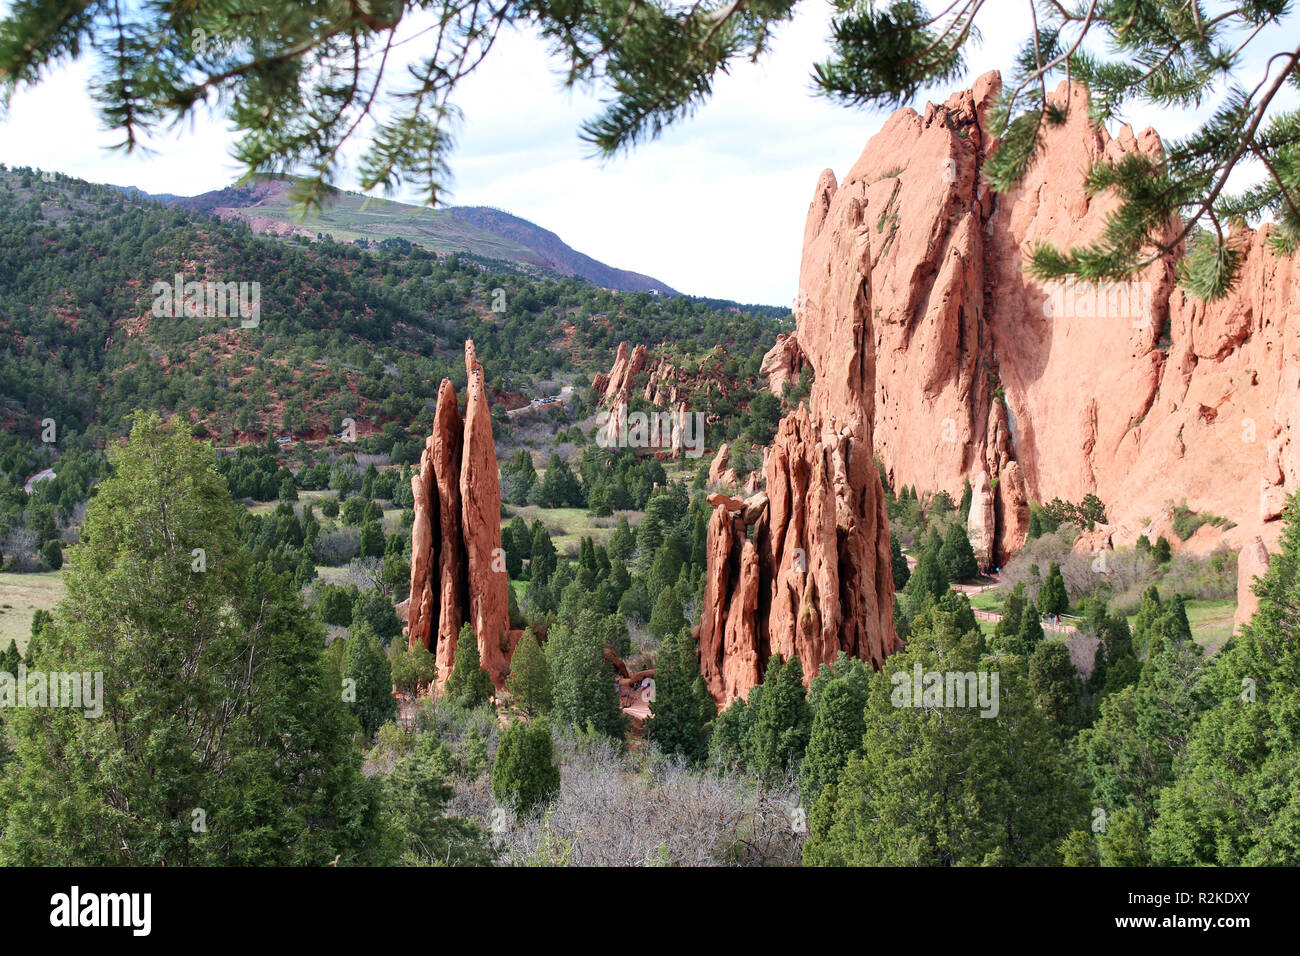 Herrliche Ausblicke auf die Landschaft des Red Rock Pinnacles und einzigartigen Felsformationen mit Pinien bewachsene Berge im Hintergrund beim Wandern im Garten von t Stockfoto